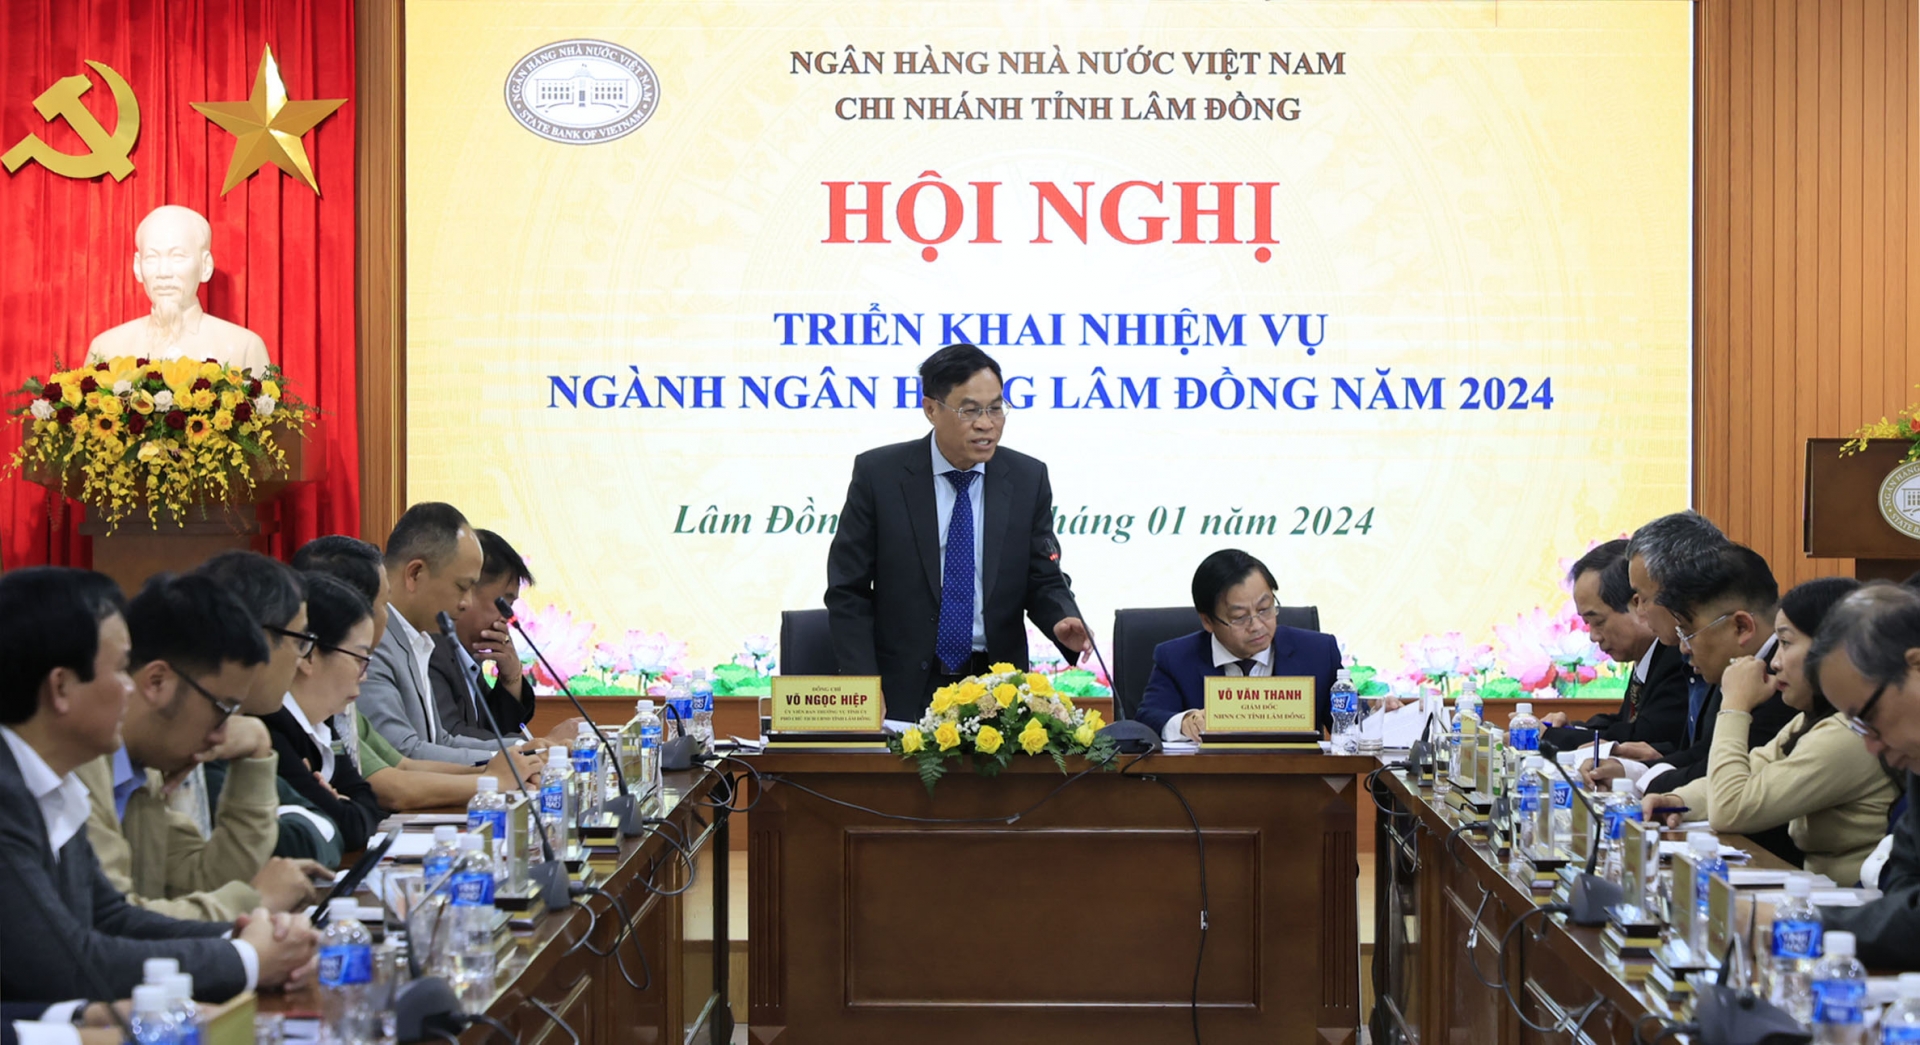 Phó Chủ tịch phụ trách UBND tỉnh Võ Ngọc Hiệp phát biểu chỉ đạo tại Hội nghị 